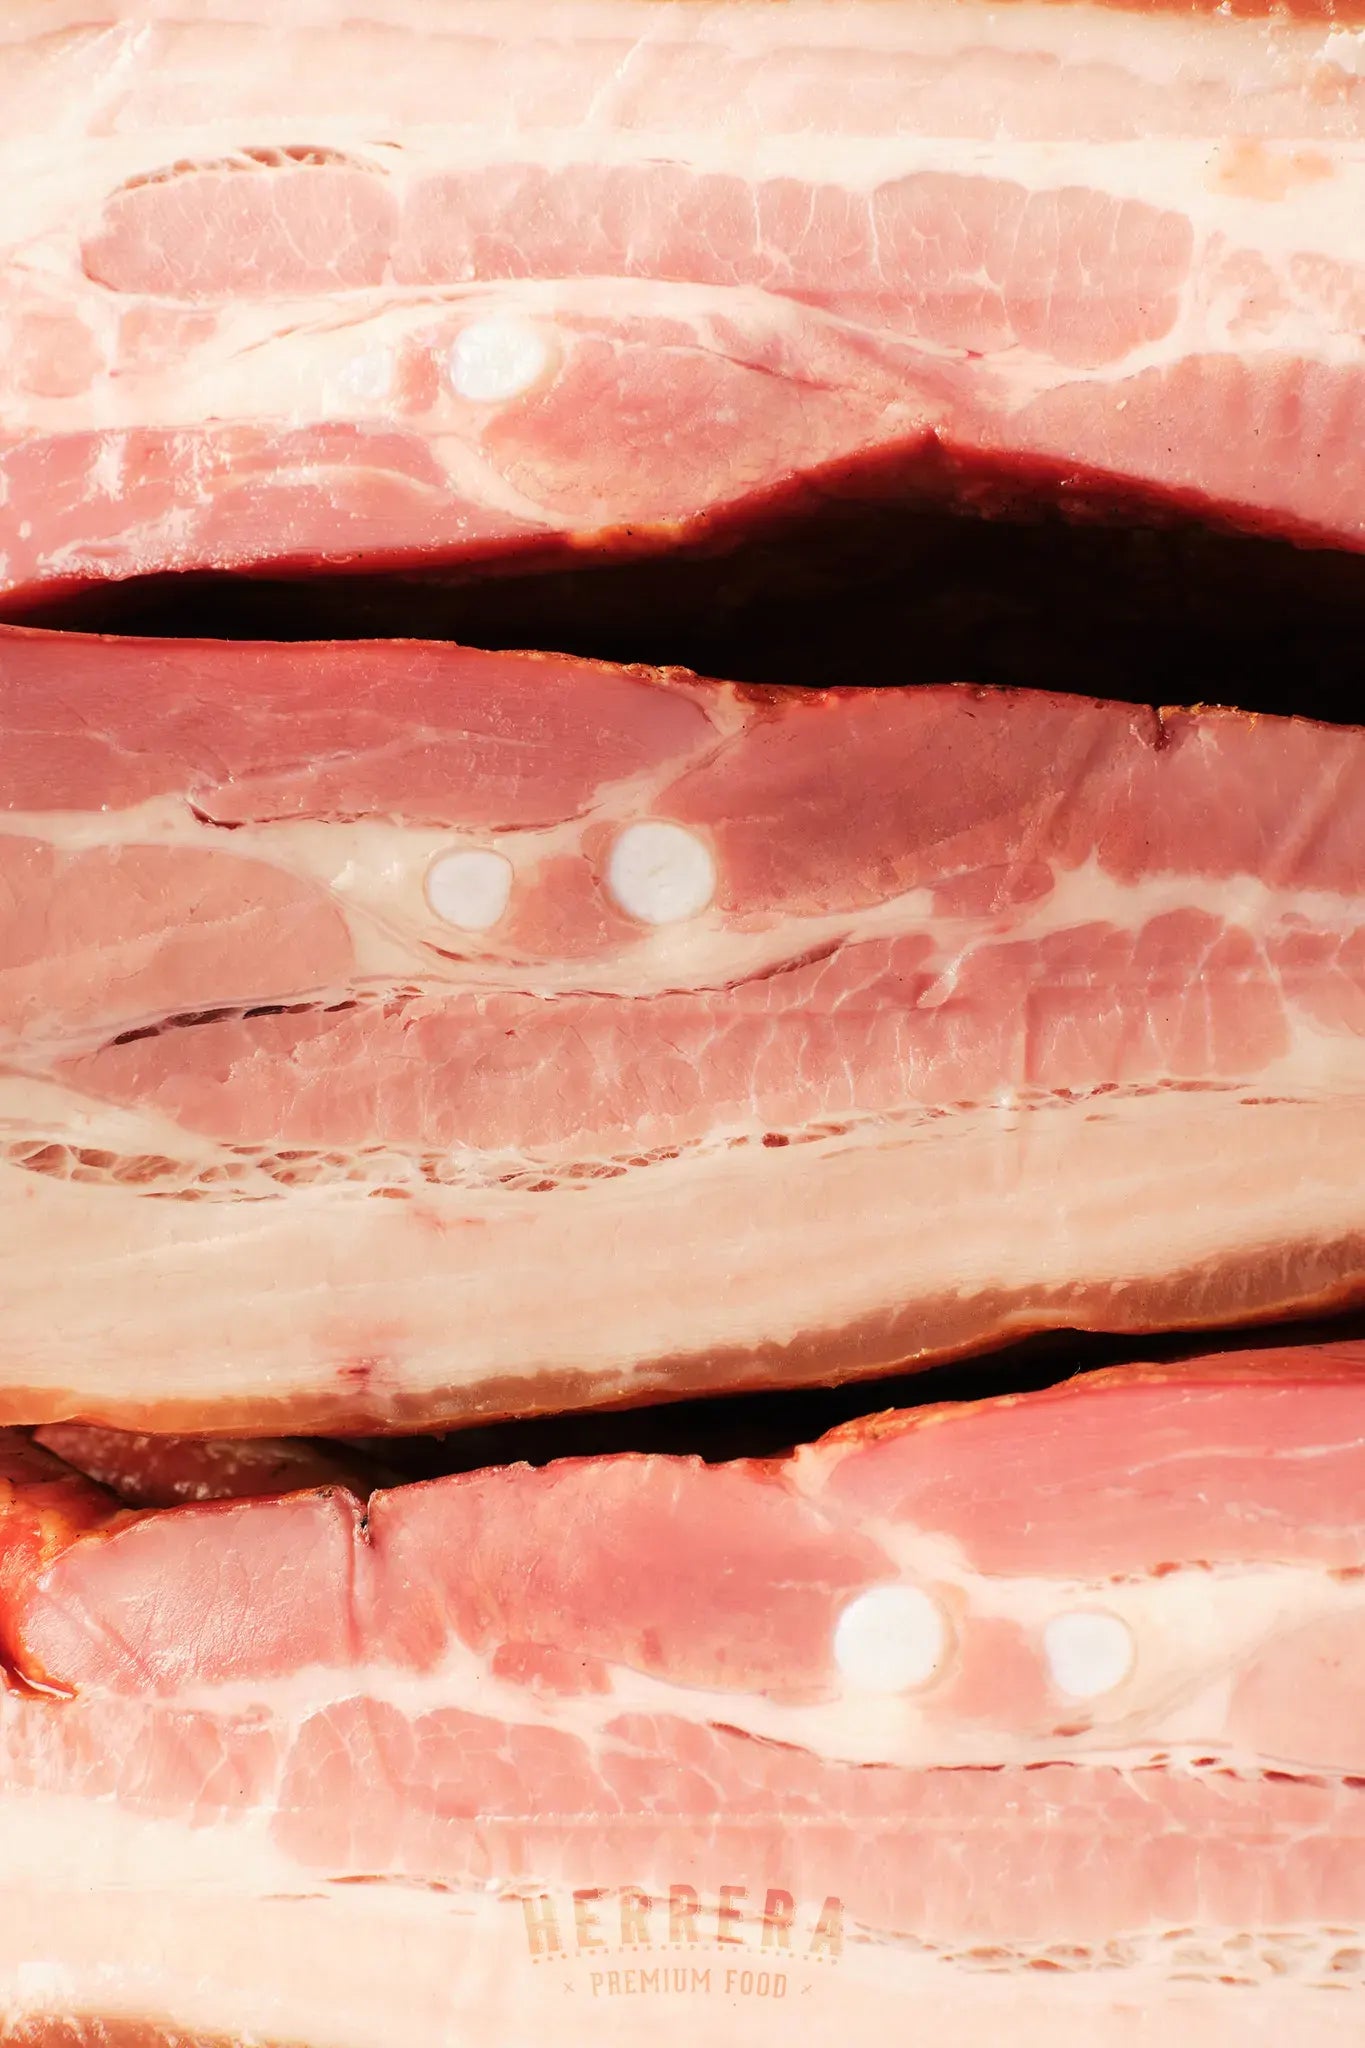 Experimenta el Verdadero Sabor del Bacon Ahumado